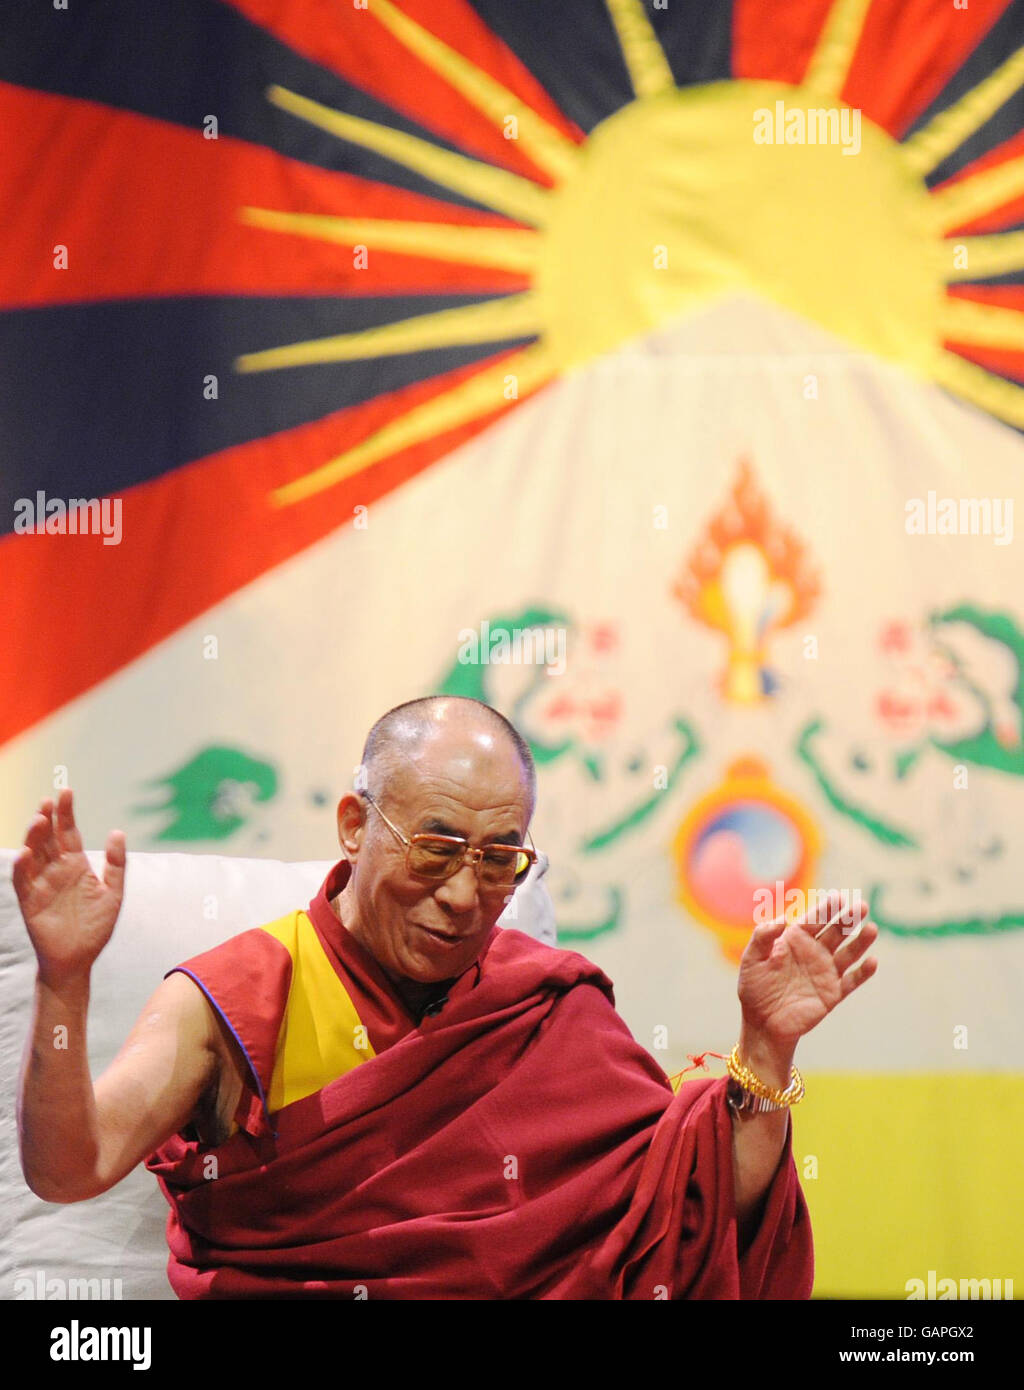 Der Dalai Lama in der Royal Albert Hall in London, wo er vor einer Audienz sprach. Stockfoto